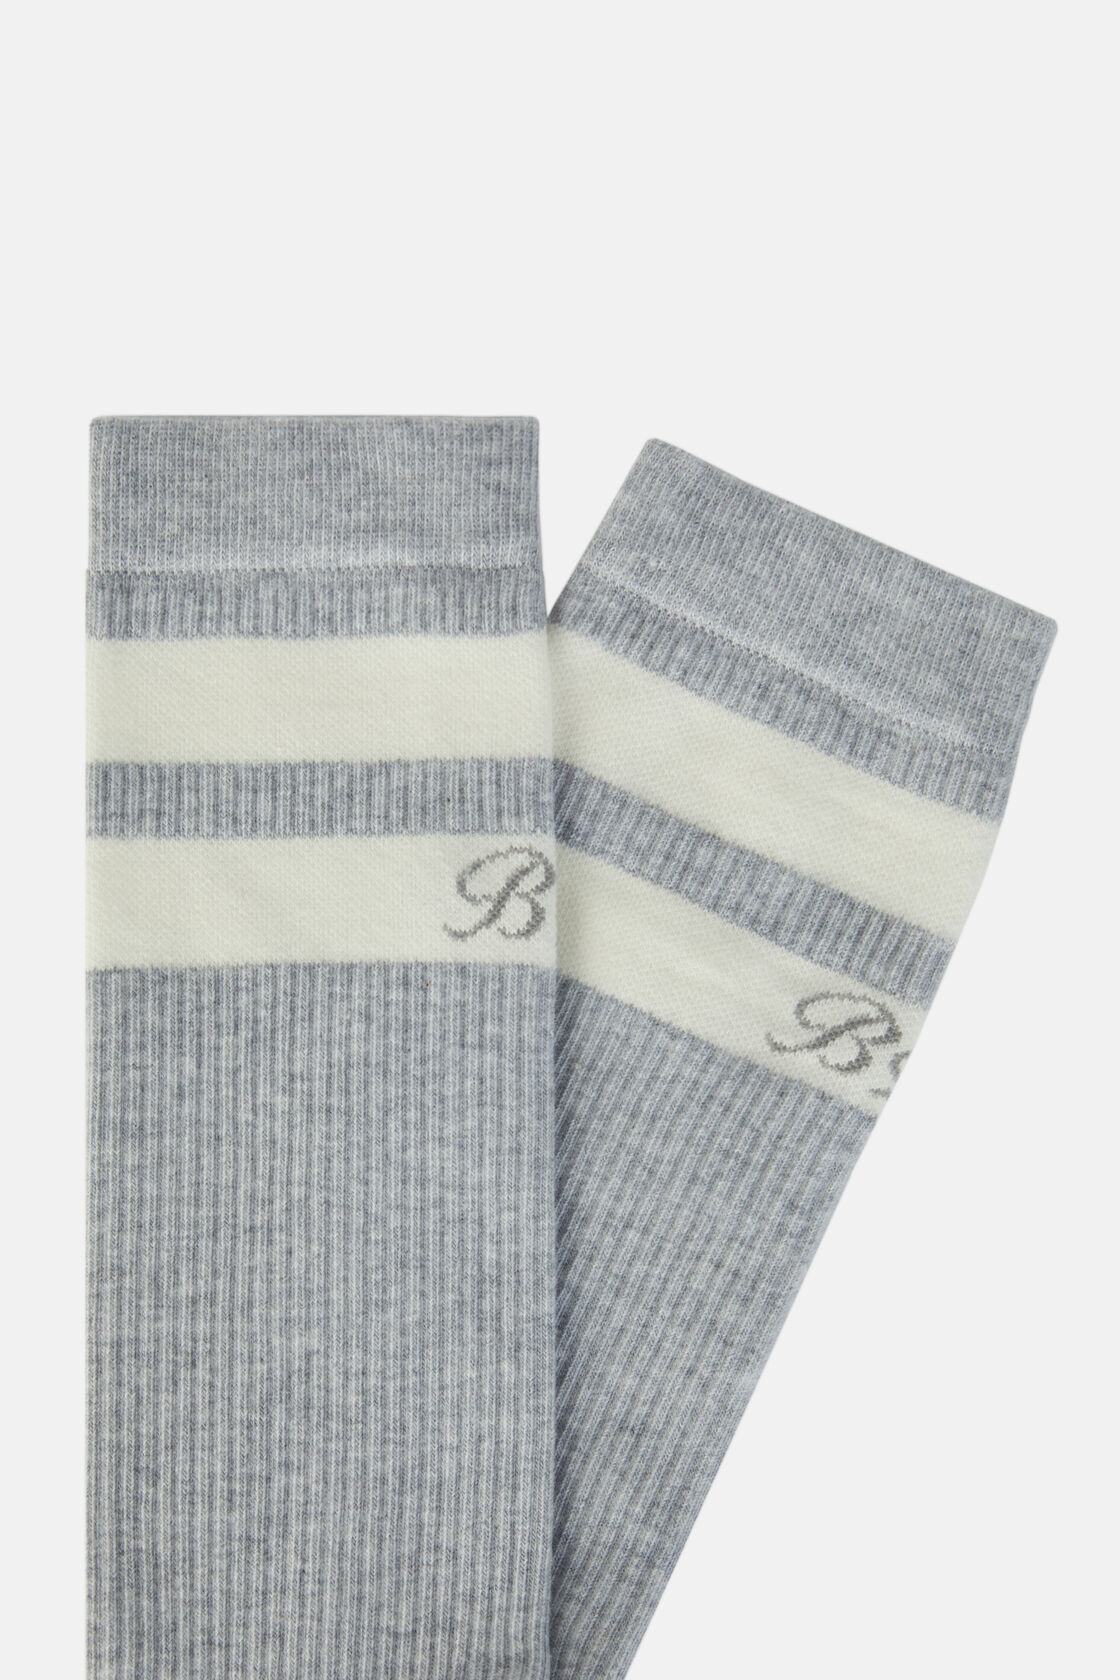 Κάλτσες με διπλή ρίγα, από σύμμεικτο βαμβάκι, Grey, hi-res